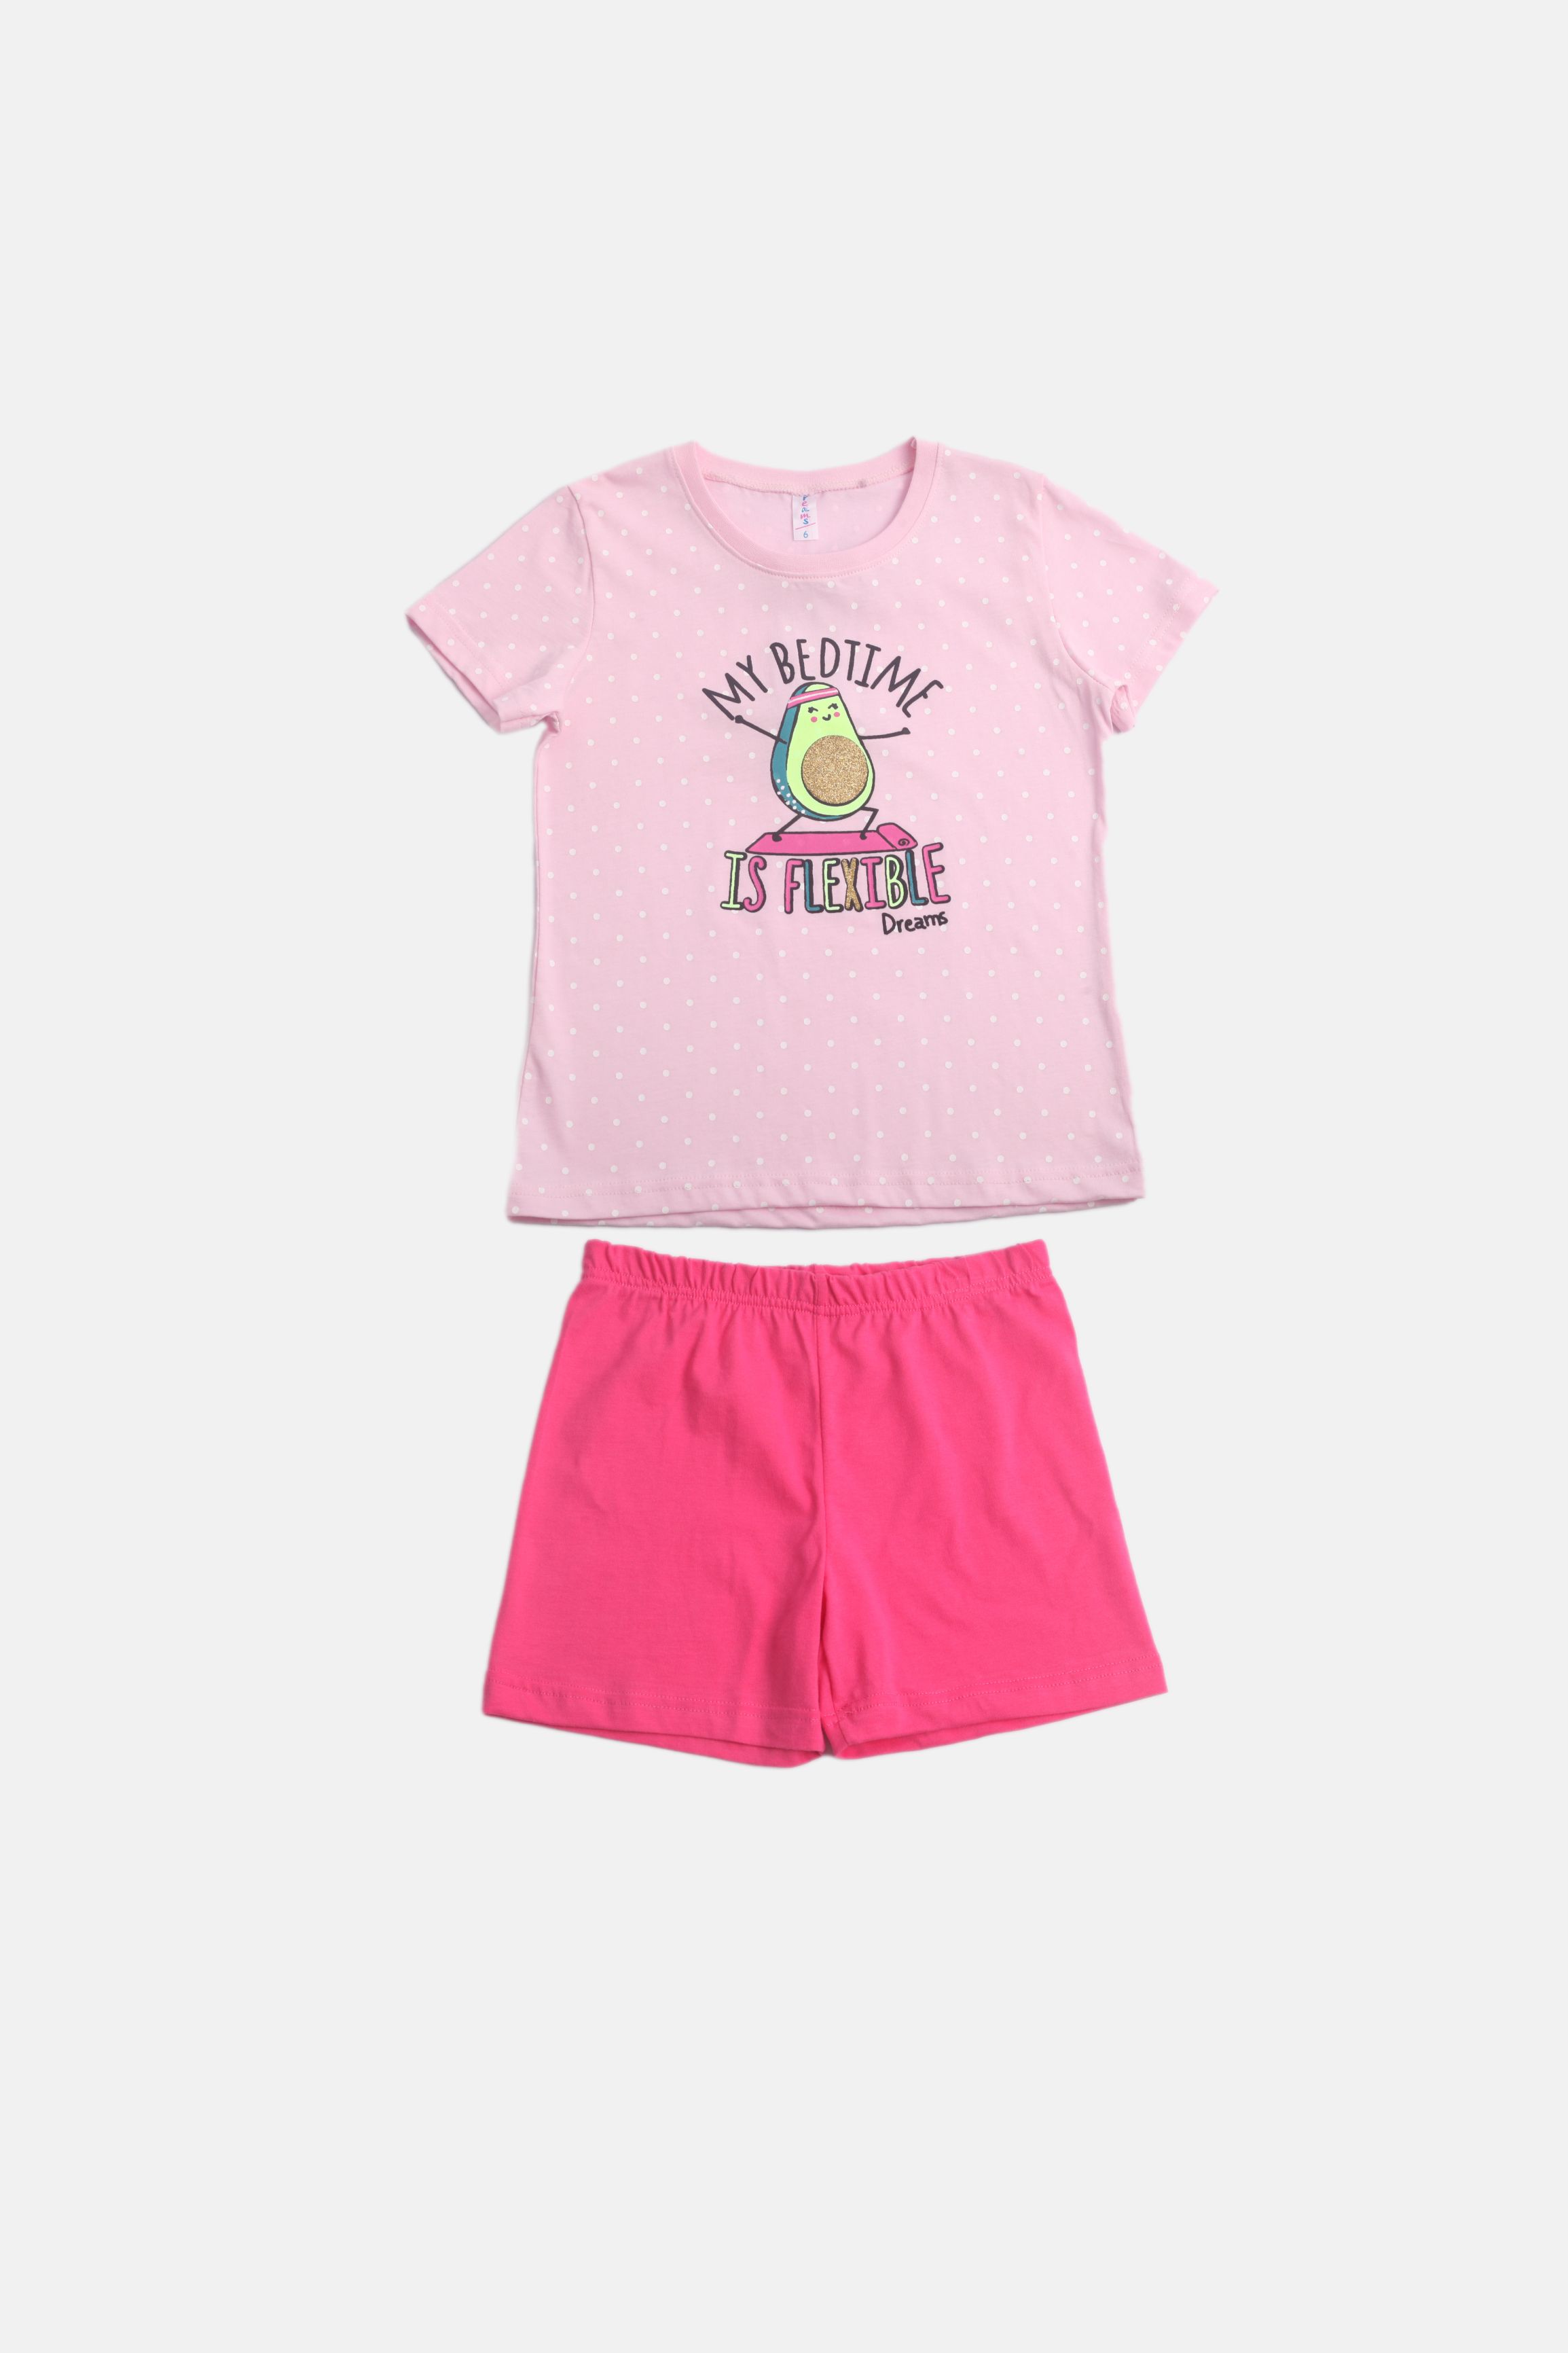 Dívčí bavlněné pyžamo "AVOCADO"/Zelená, růžová Barva: Růžová, Velikost: vel. 6 (114/120 cm)